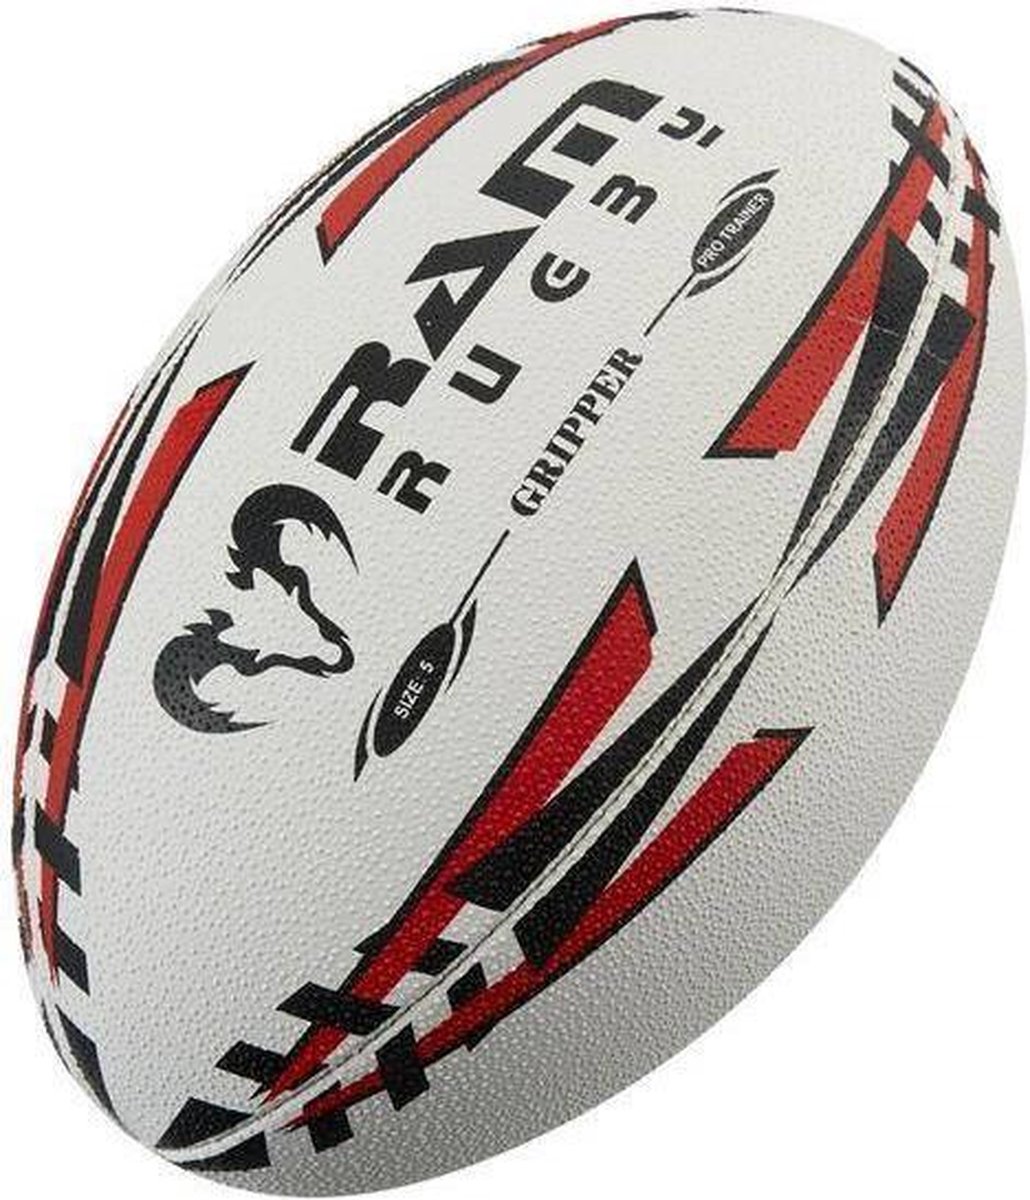 Gripper Pro rugbybal - Jeugd wedstrijdbal - 3D grip - Maat 3 - Geel